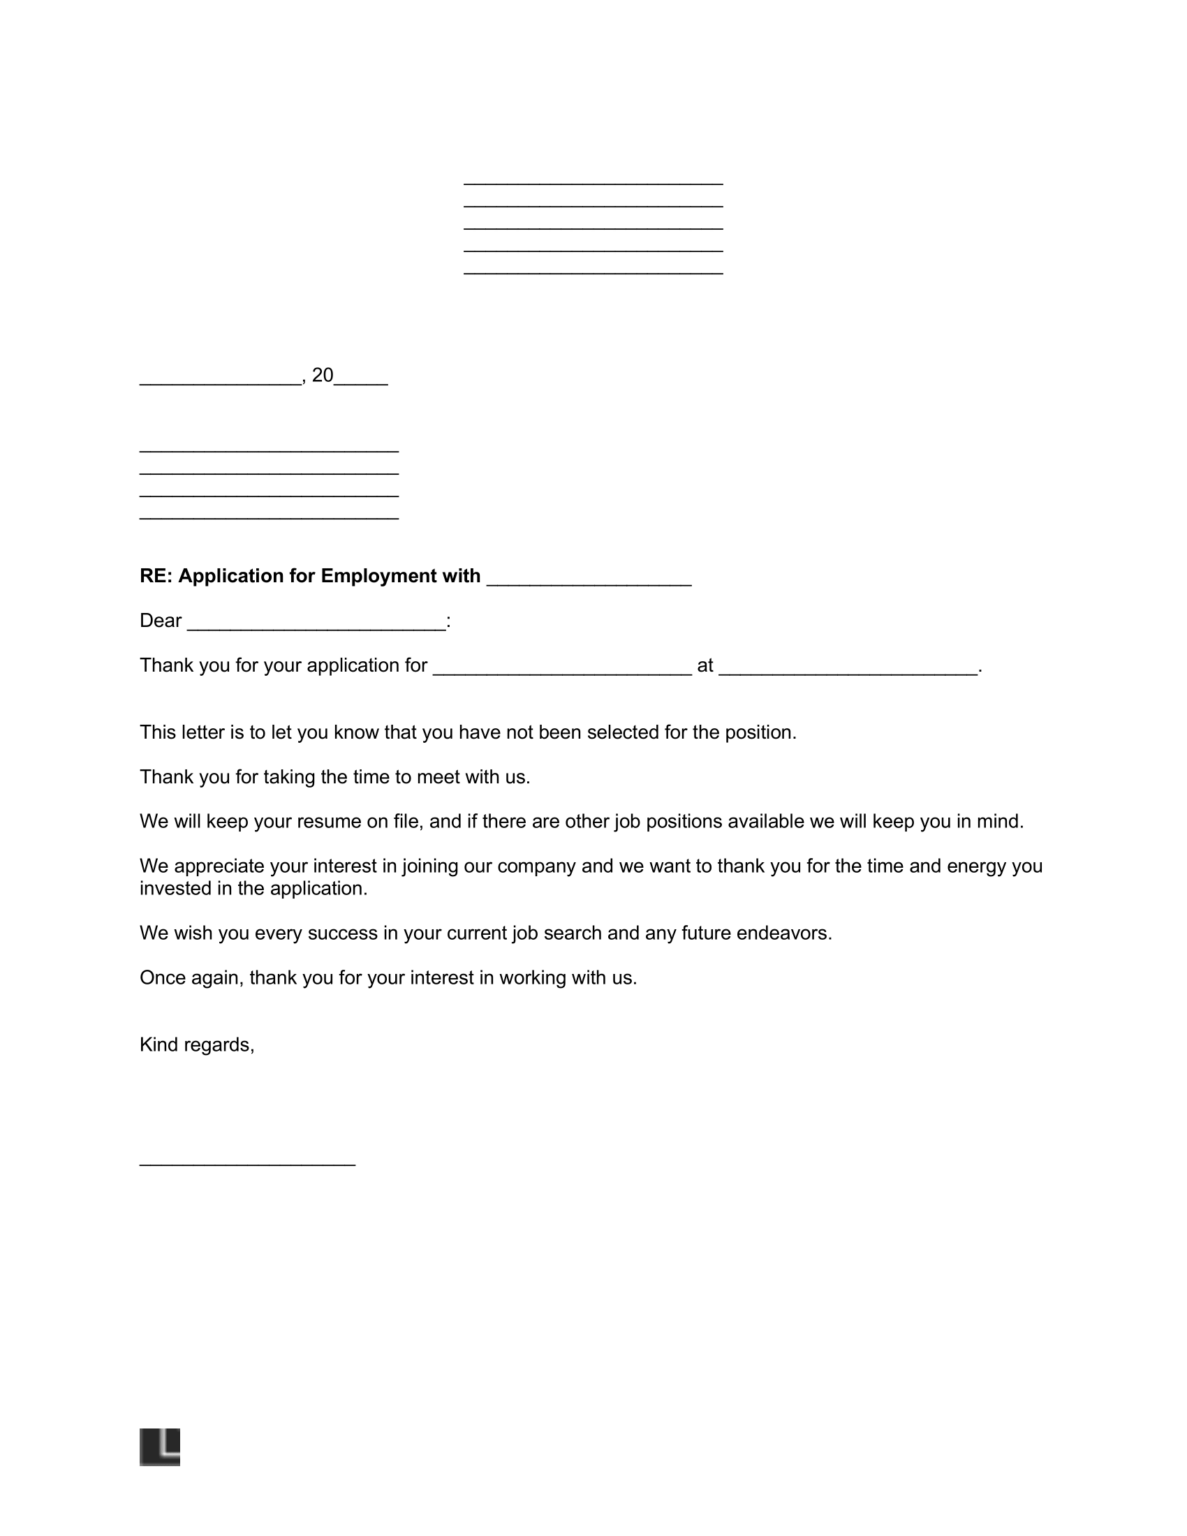 rejection of job application letter sample